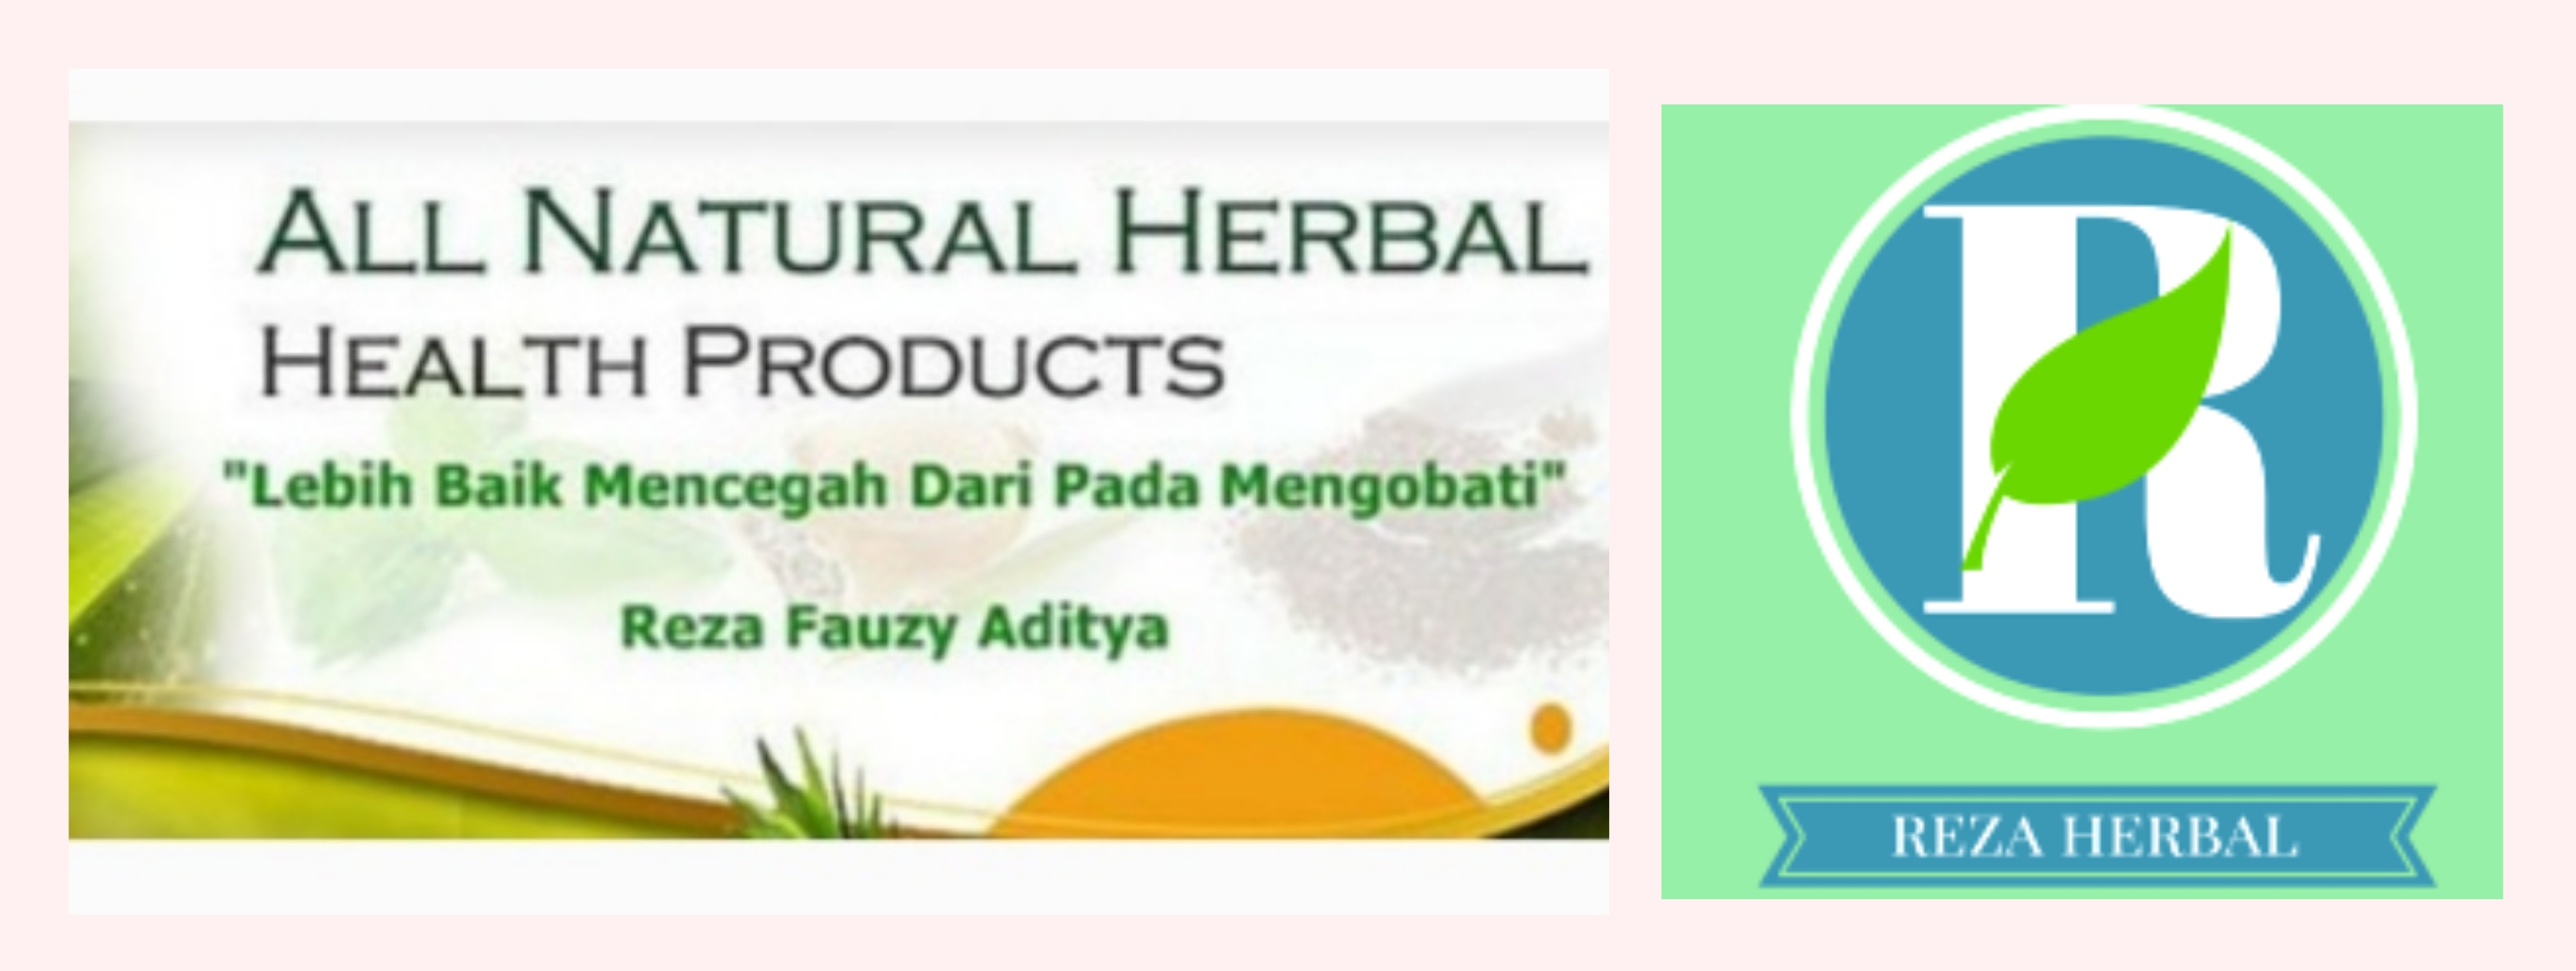 Reza Herbal Indonesia Buka Loker Terbaru untuk Posisi Design dan Marketing Online, Pelamar Pendidikan SMK